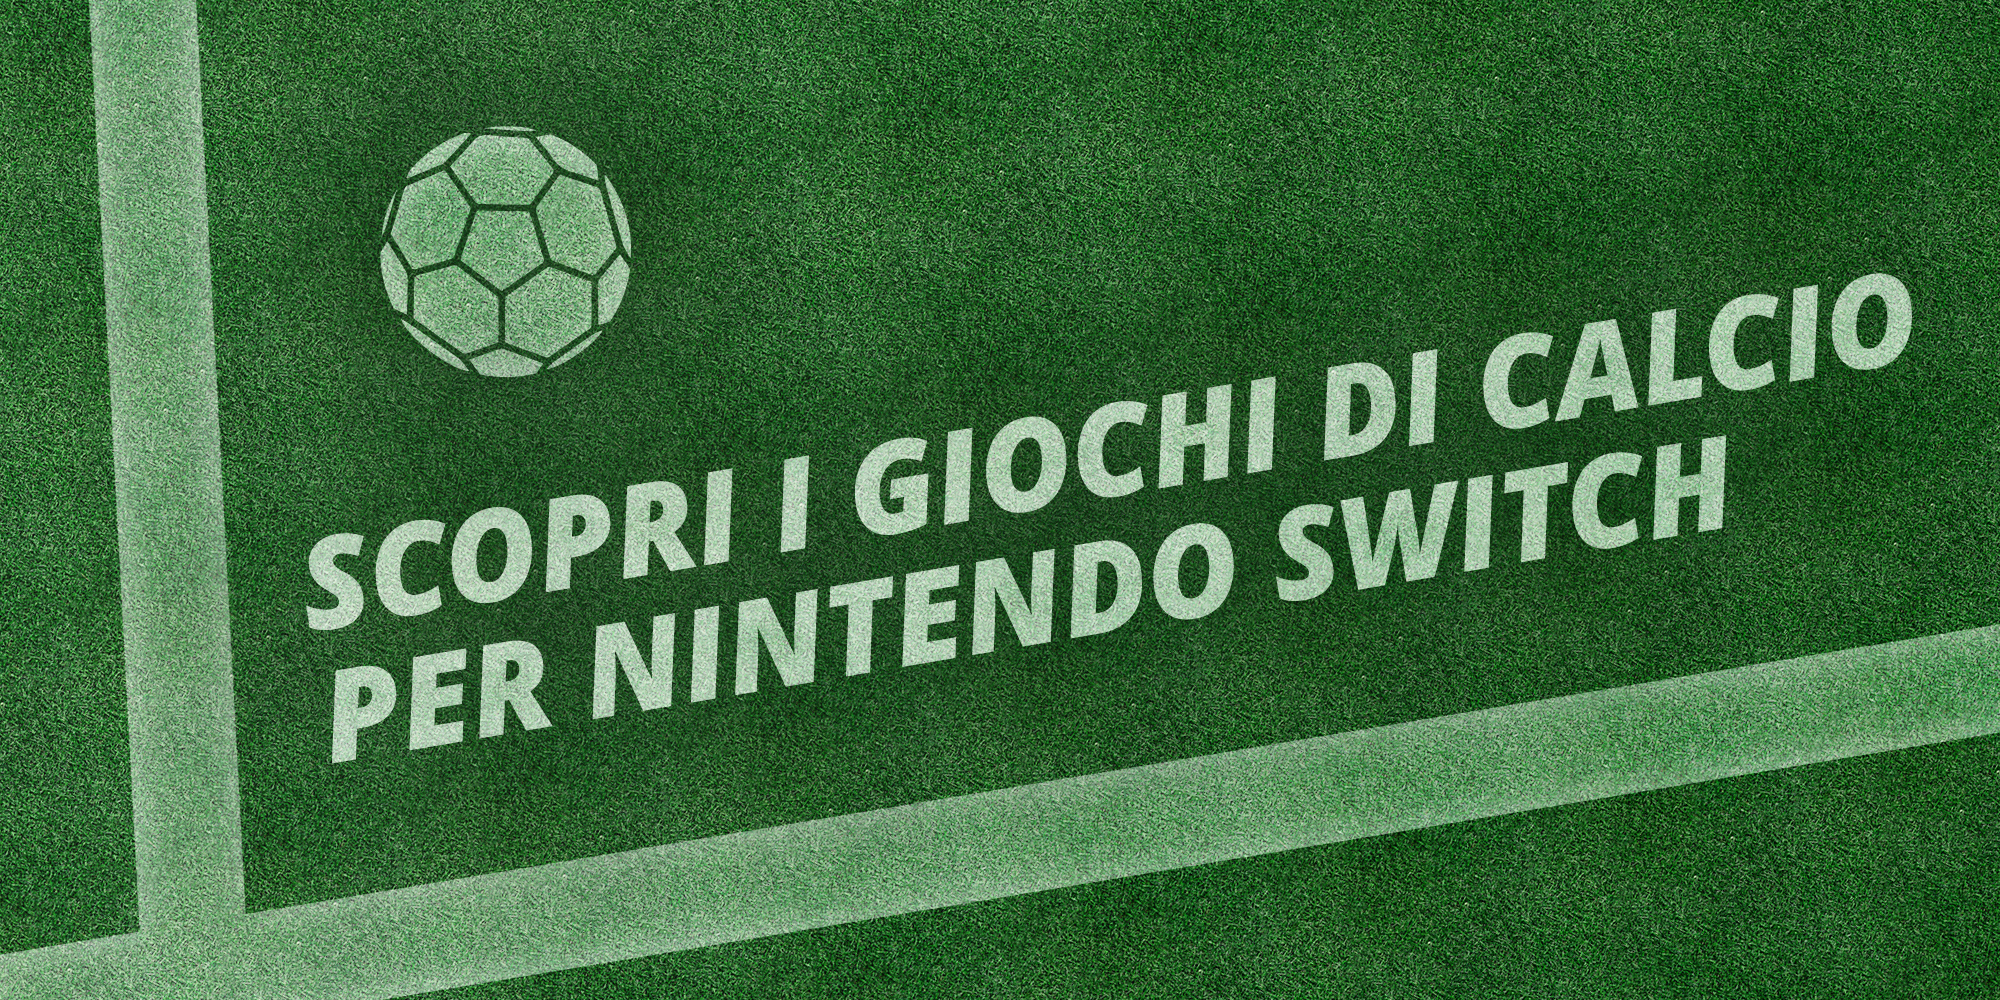 Scopri i giochi di calcio per Nintendo Switch